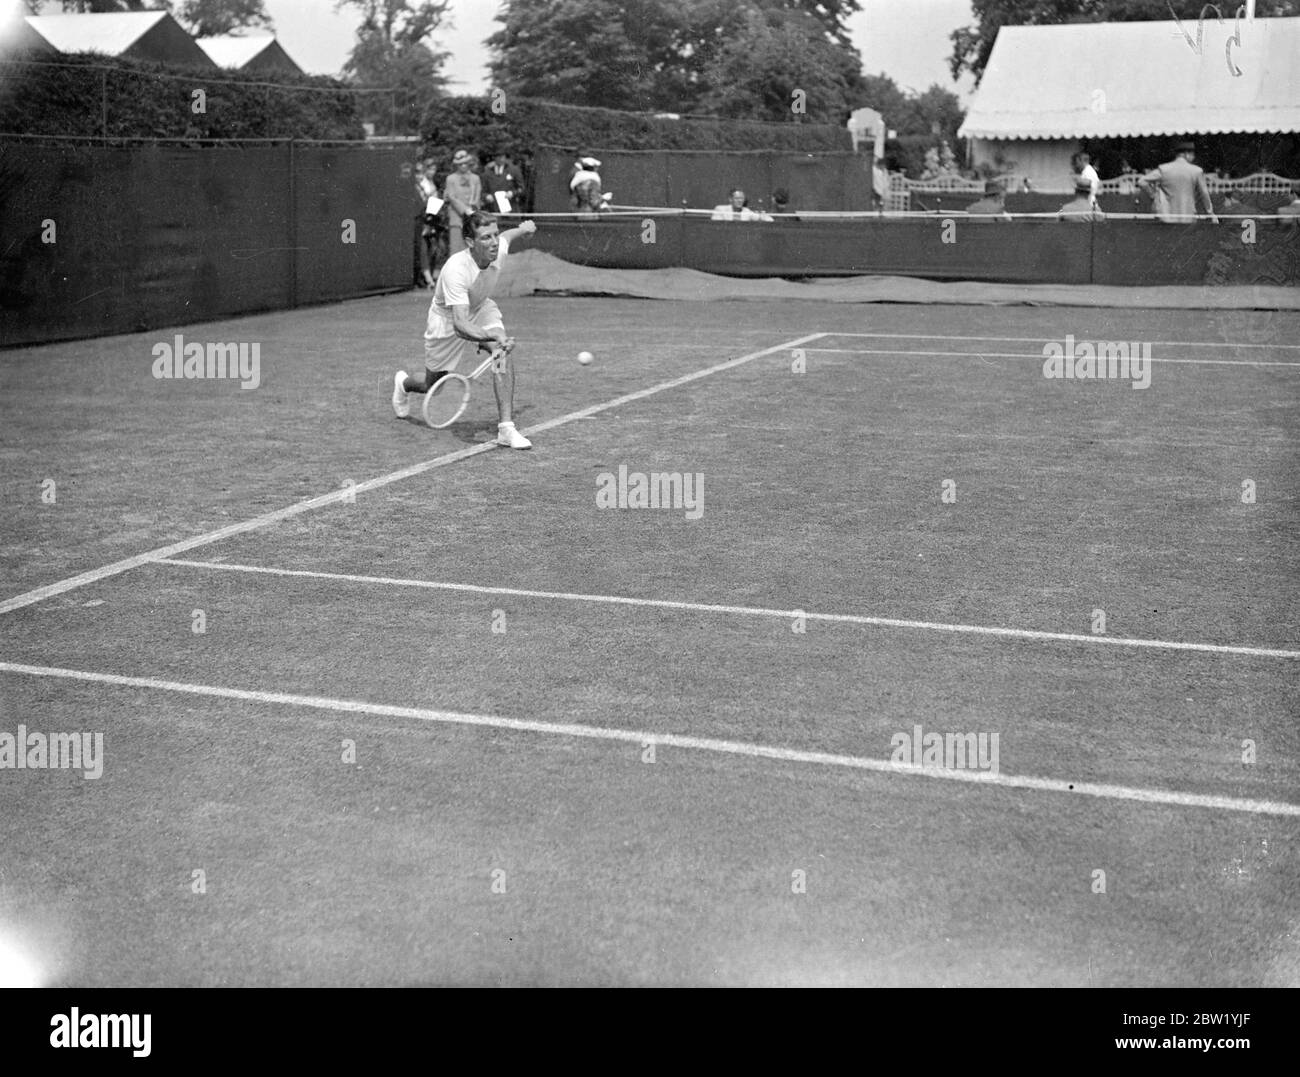 Jacques Jamai de France dans son match contre Gene Mako des Etats-Unis dans les championnats de tennis de Wimbledon. 21 juin 1937 Banque D'Images